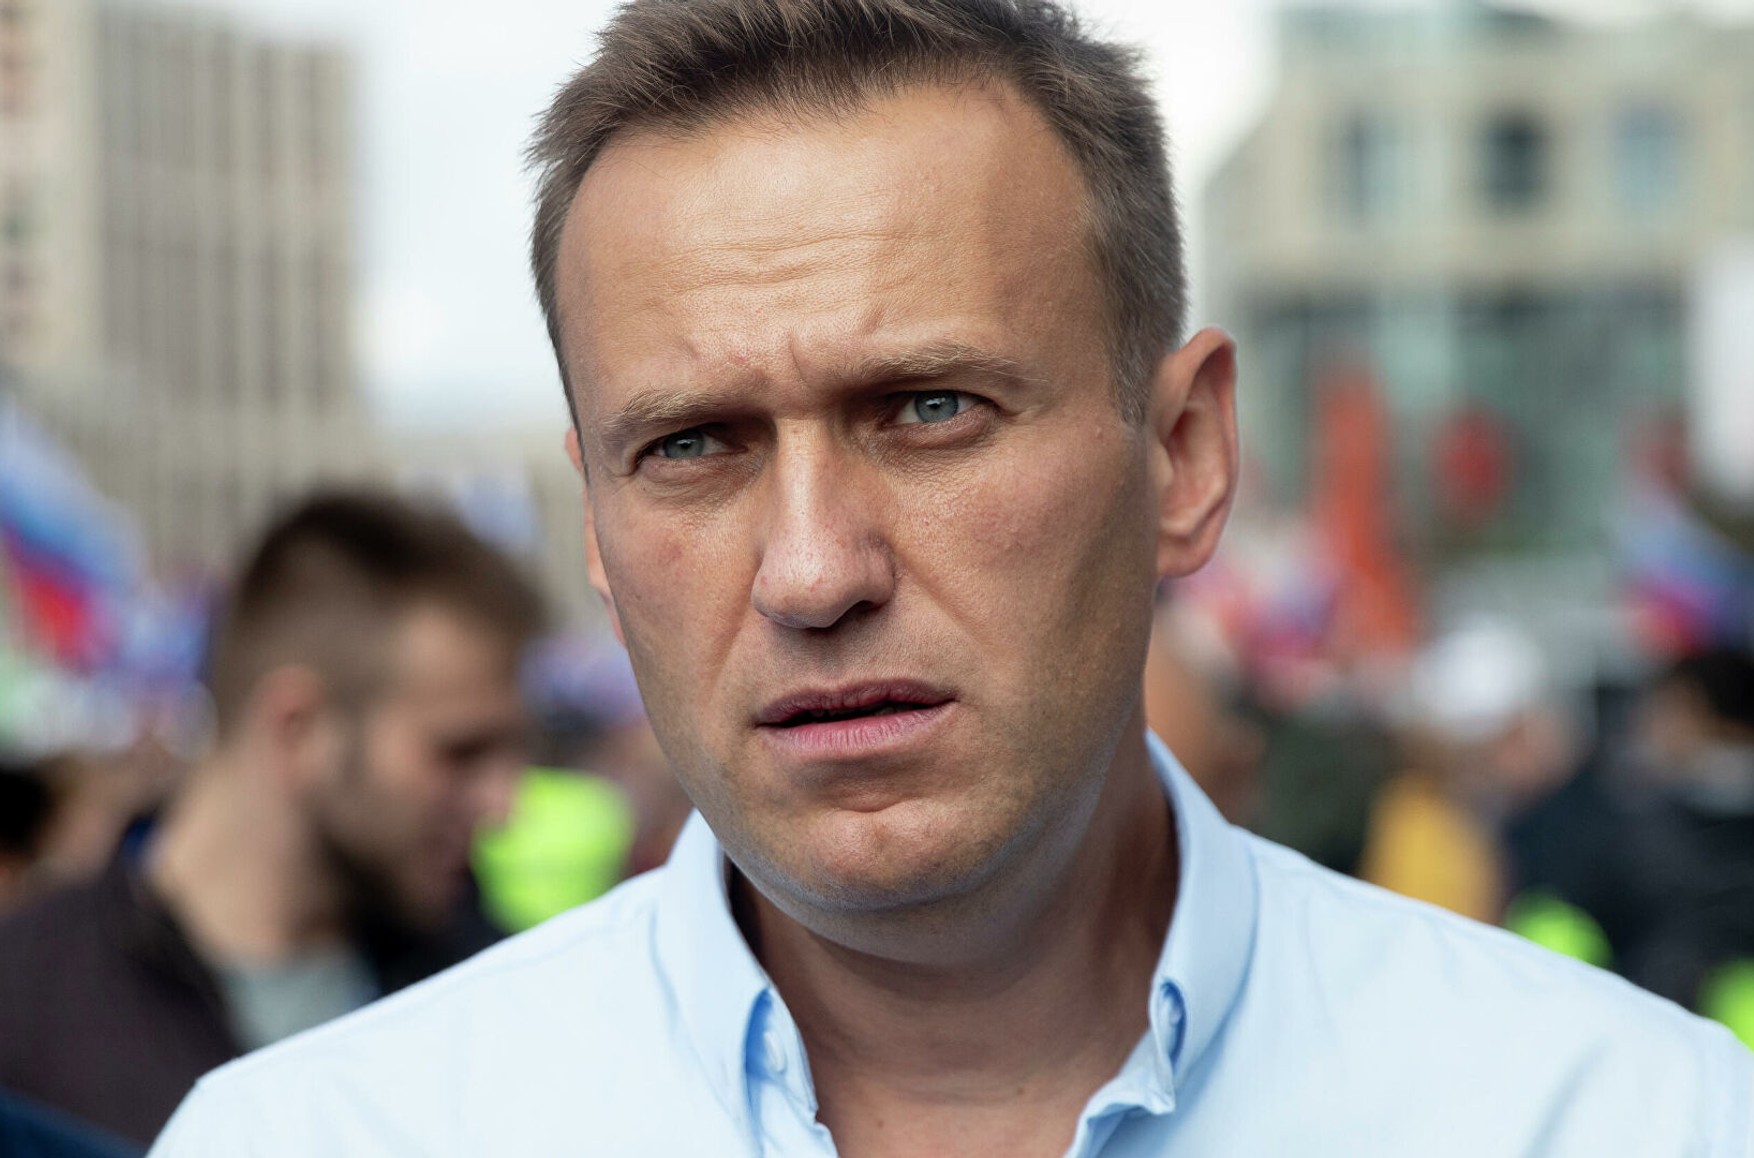 Навальний подав в суд на Генпрокуратуру і Роскомнадзор через блокування його сайтів